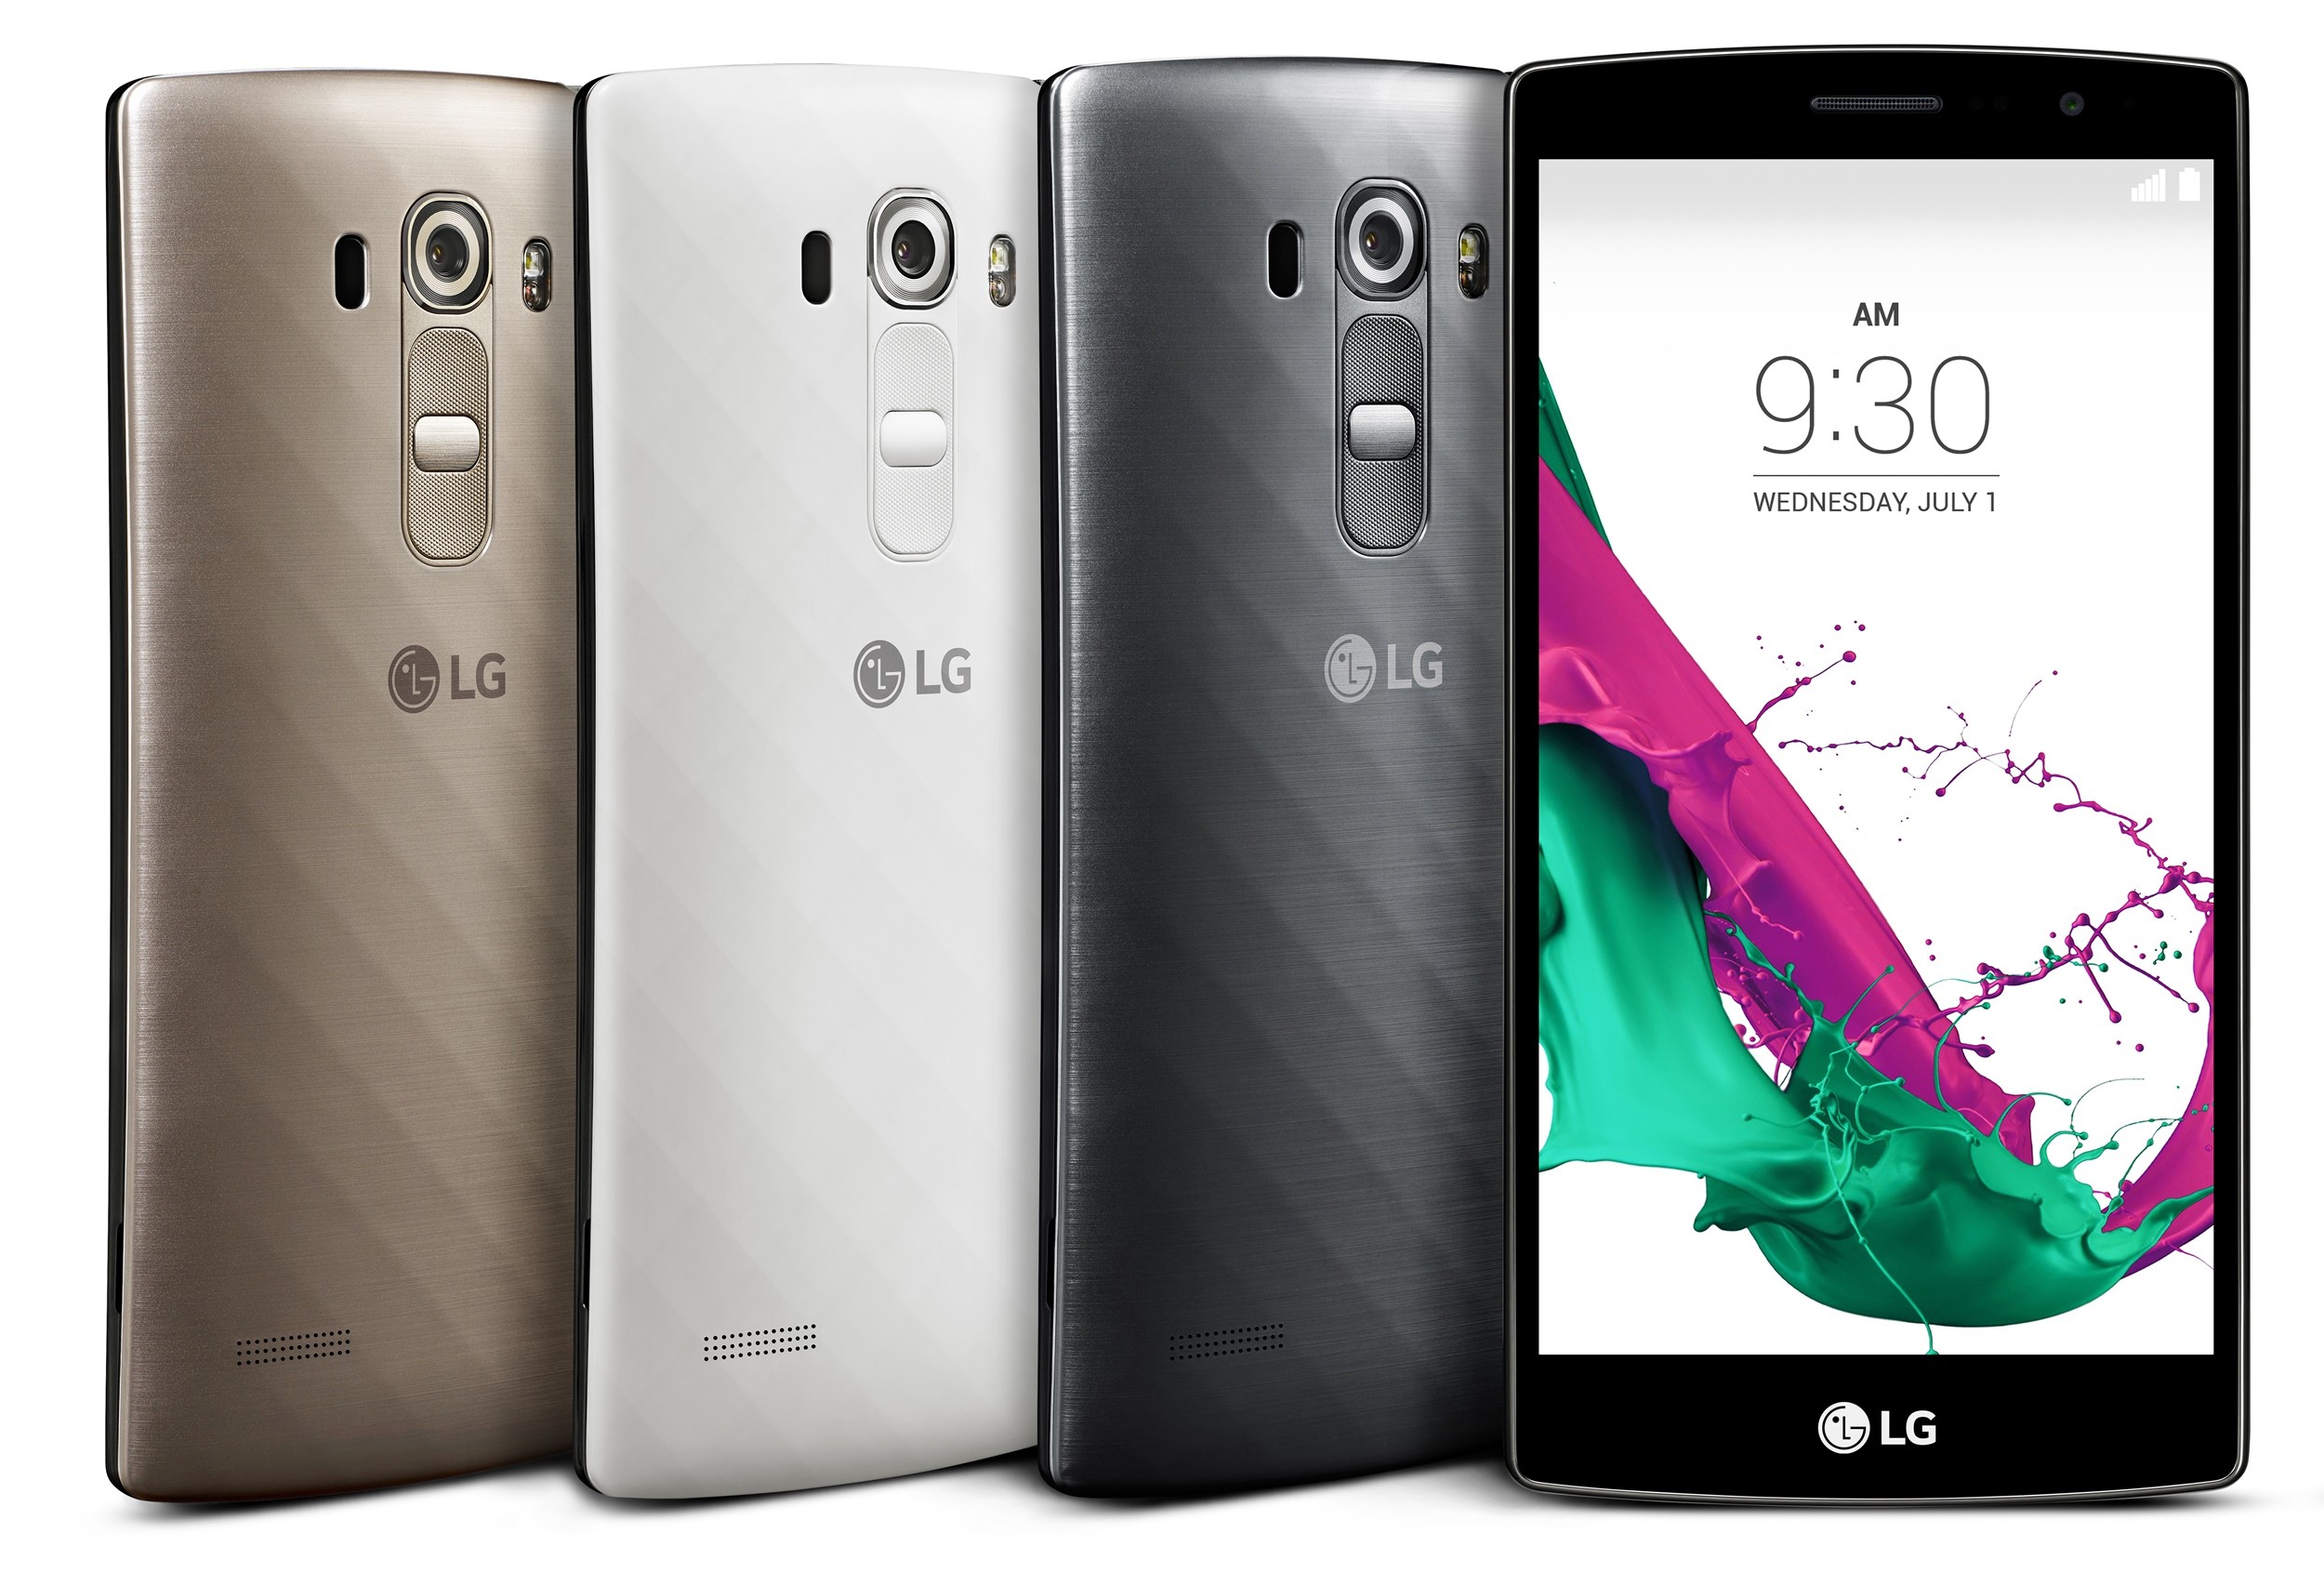 LG   G4 Beat (G4s)  